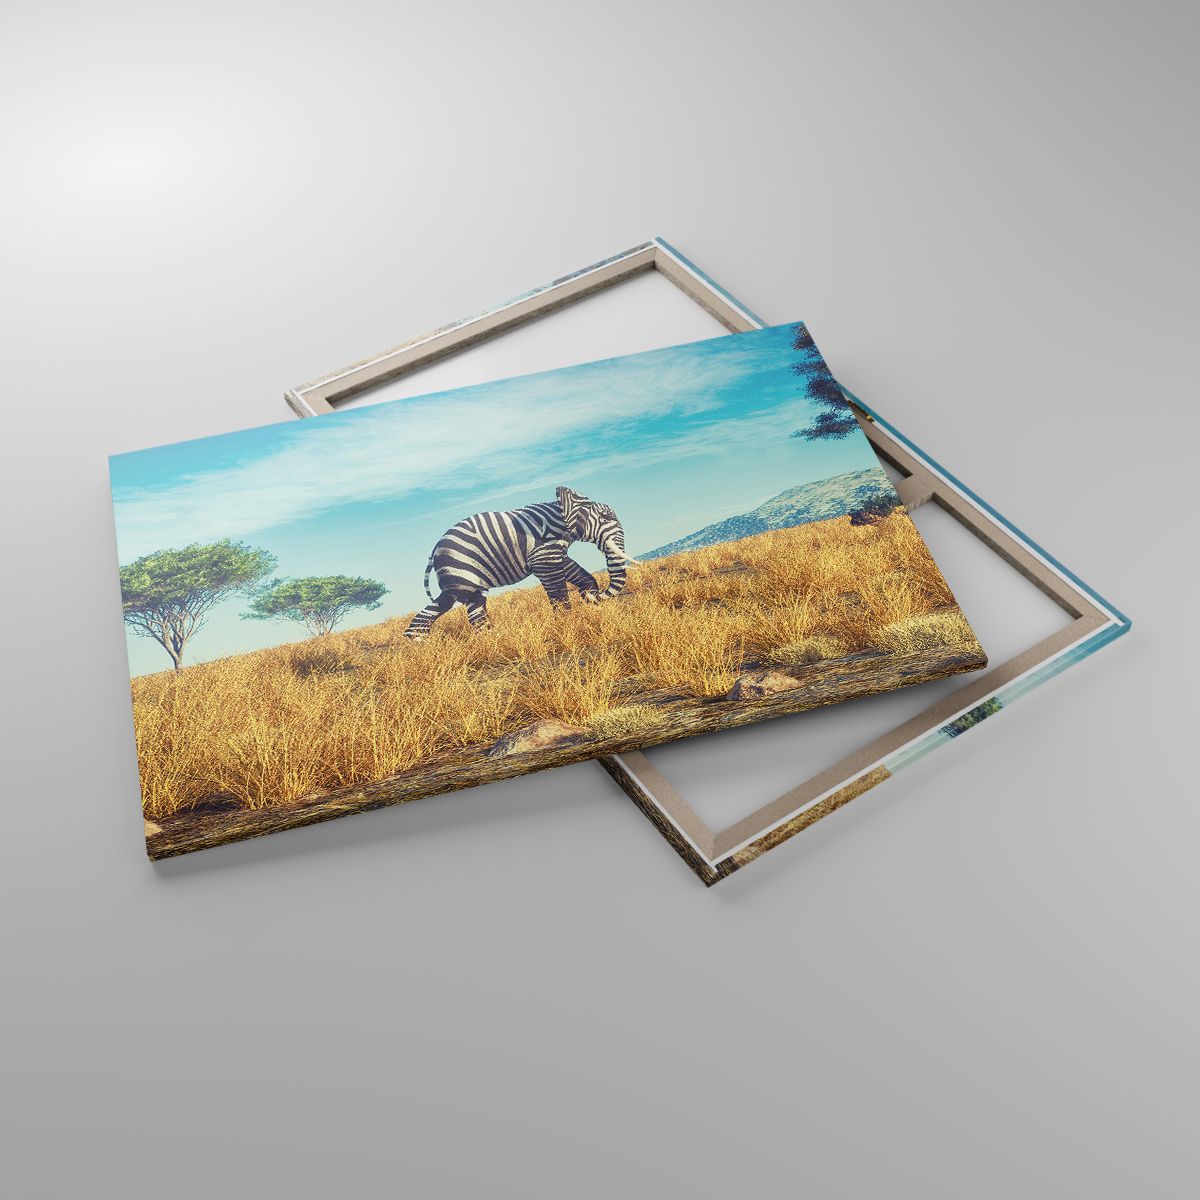 Leinwandbild Abstraktion, Leinwandbild Elefant, Leinwandbild Rippen, Leinwandbild Landschaft, Leinwandbild Afrika